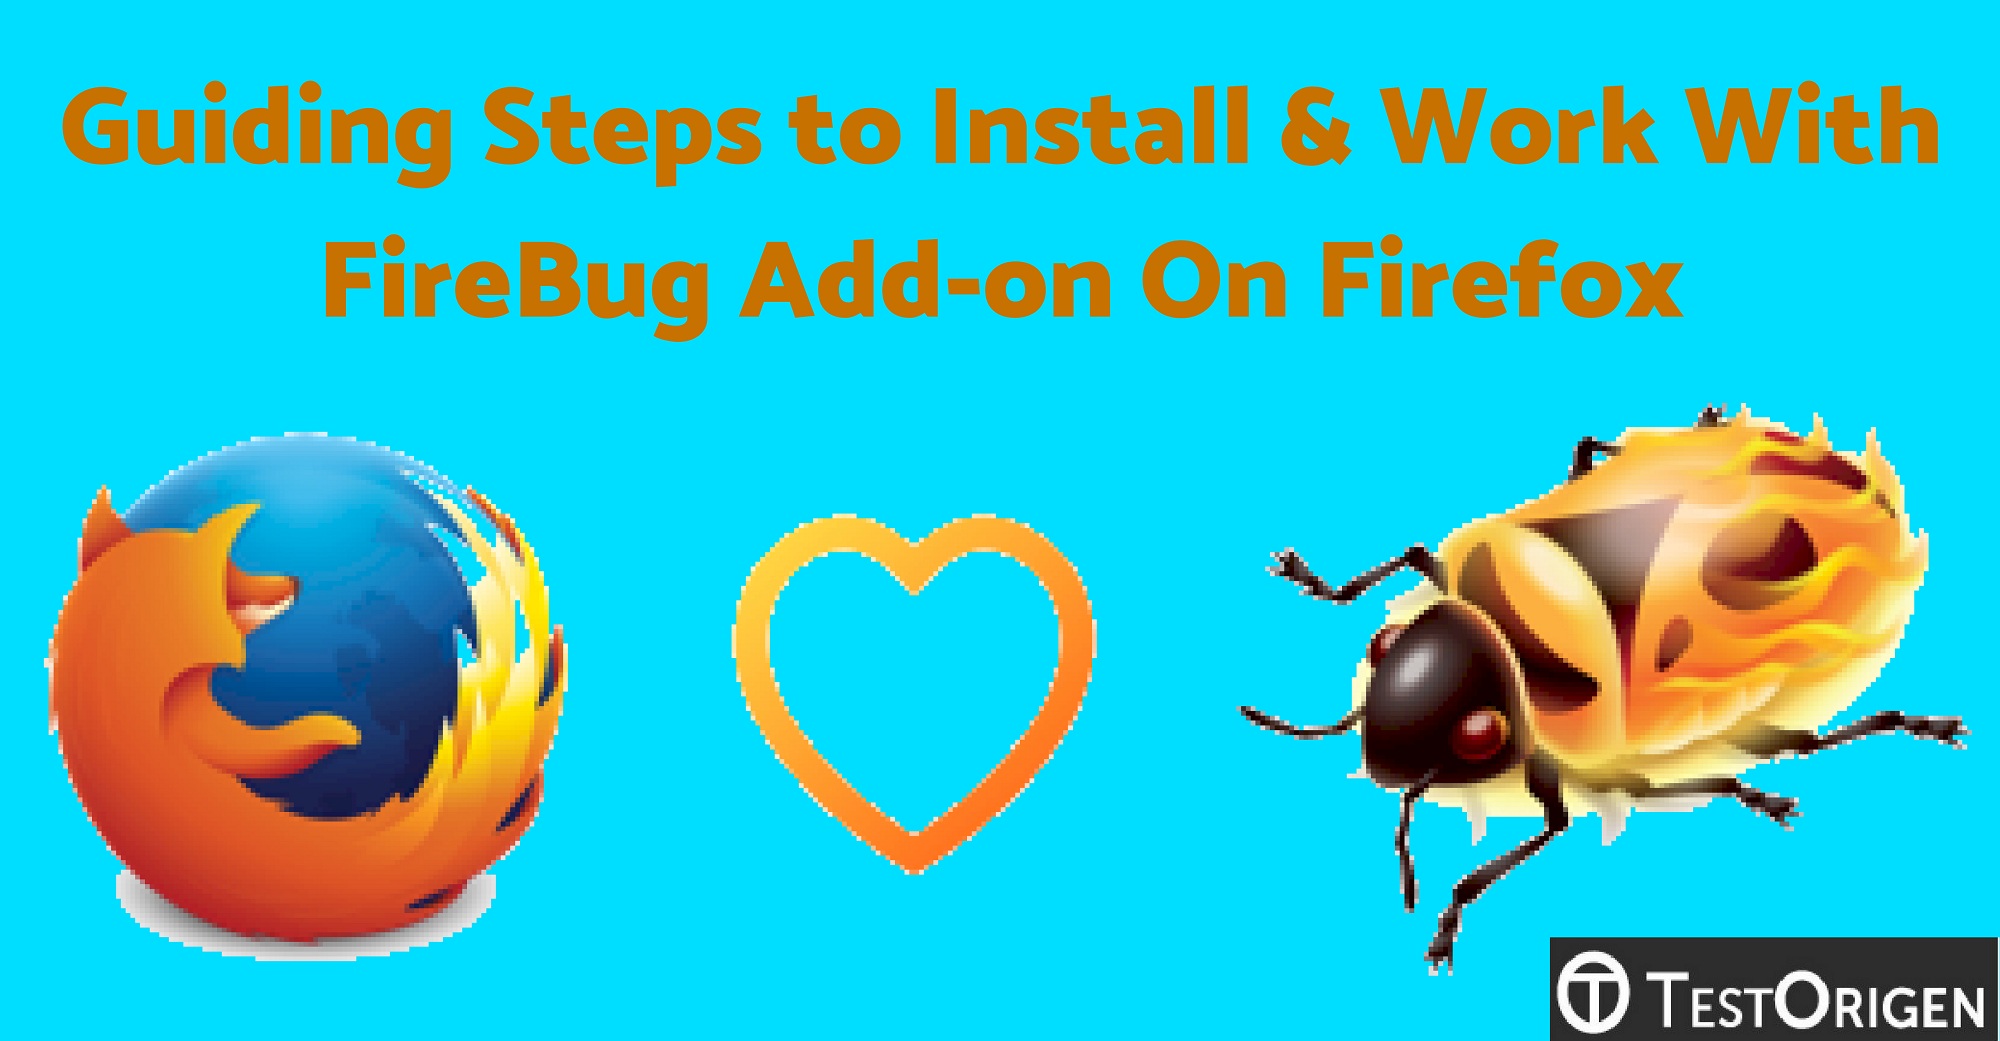 Download Firebug Addon For Firefox